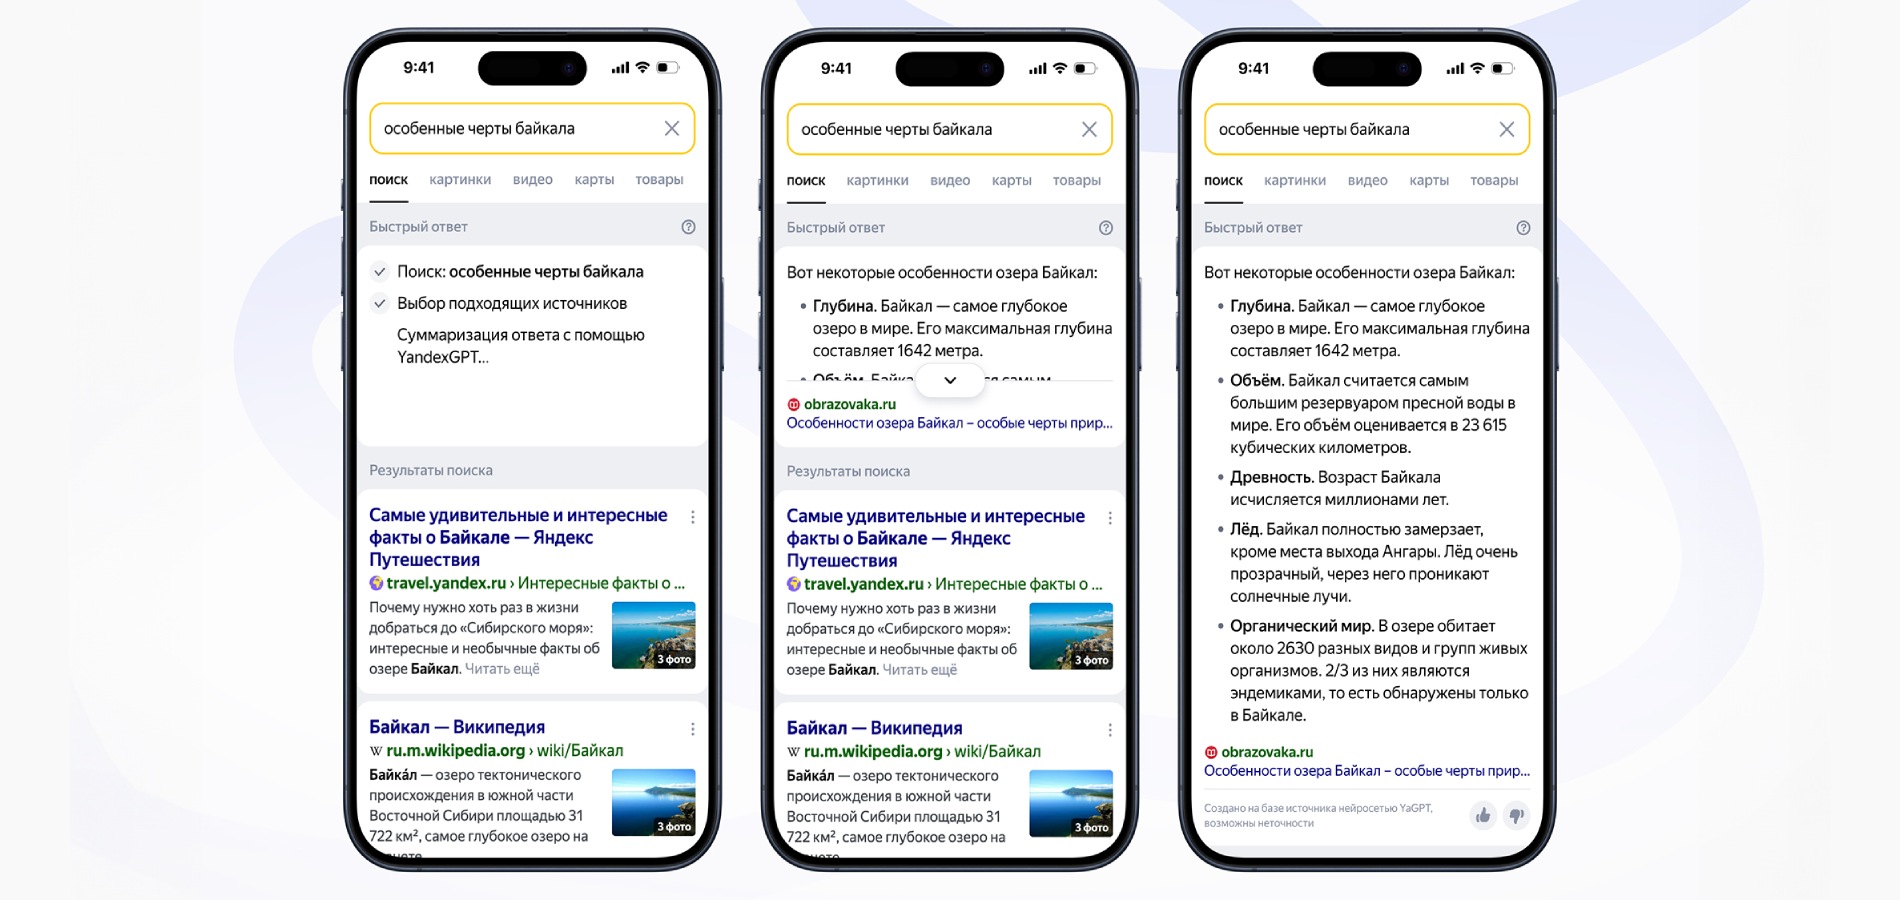 Яндекс открыл тестирование быстрых ответов от YandexGPT для всех пользователей